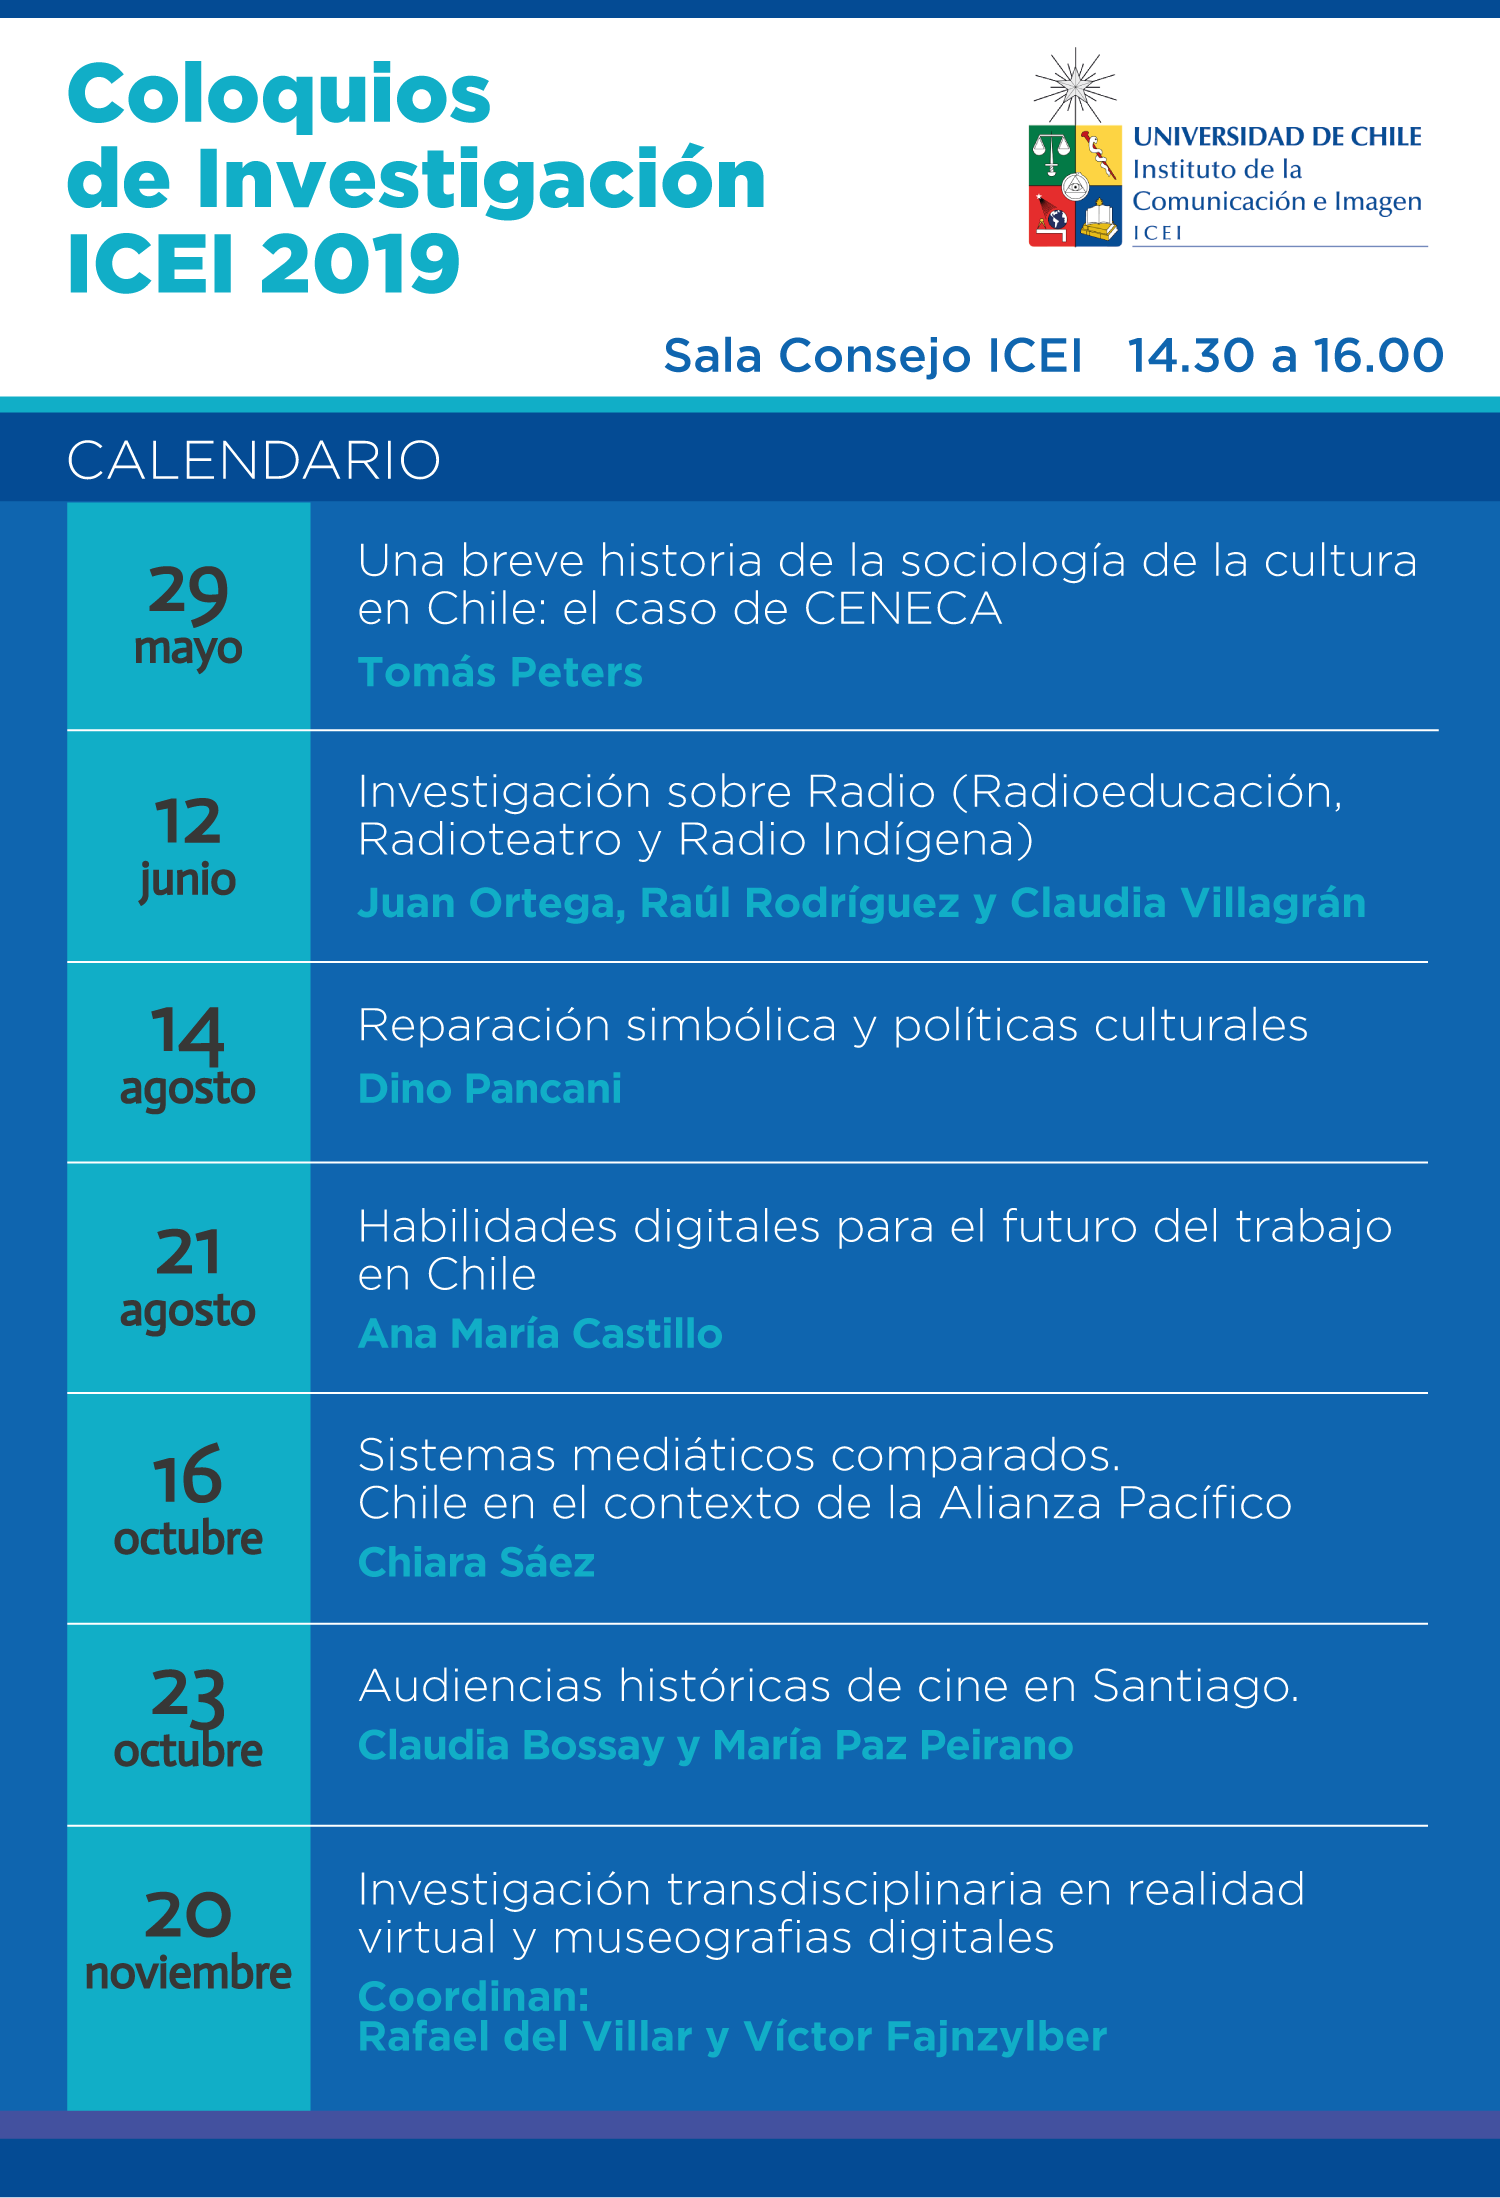 Calendarios Coloquios de Investigación ICEI 2019.